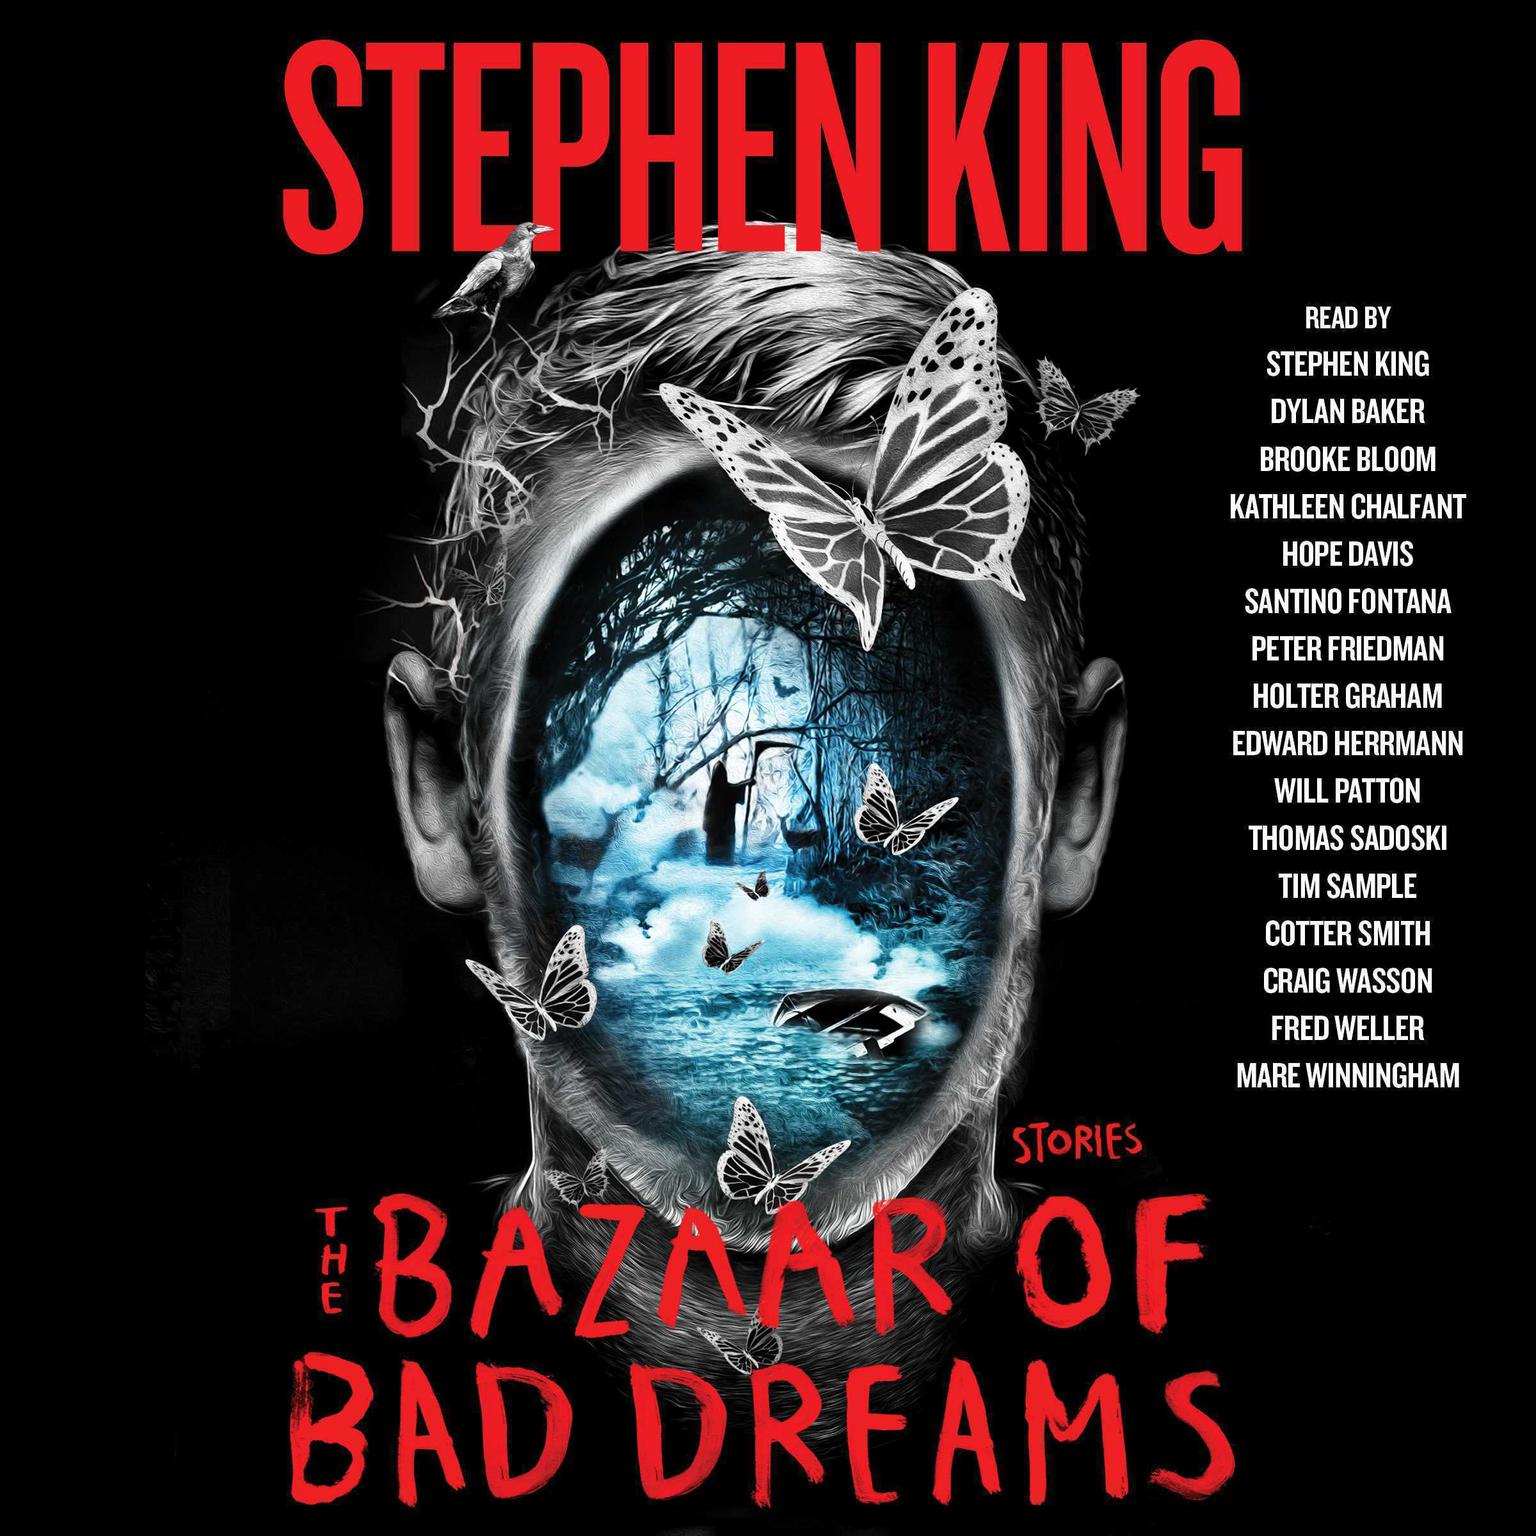 The Bazaar of Bad Dreams: Stories Audiobook, by Stephen King